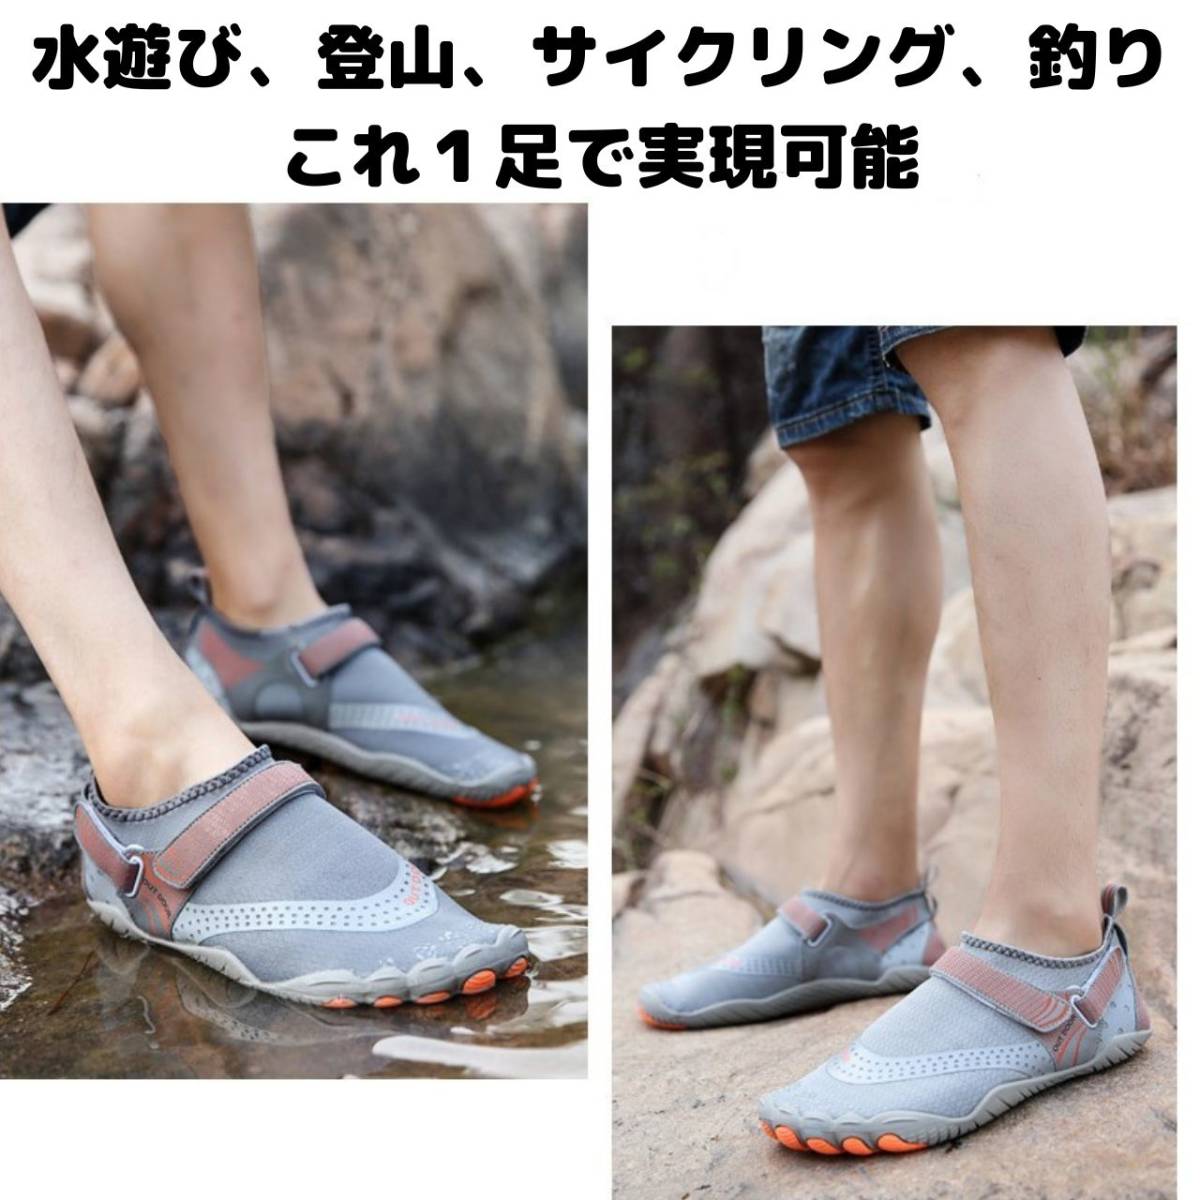  вода суша обе для aqua обувь черный 26.5. морской обувь вода обувь shuno-ke кольцо пляжные сандалии легкий вентиляция йога 